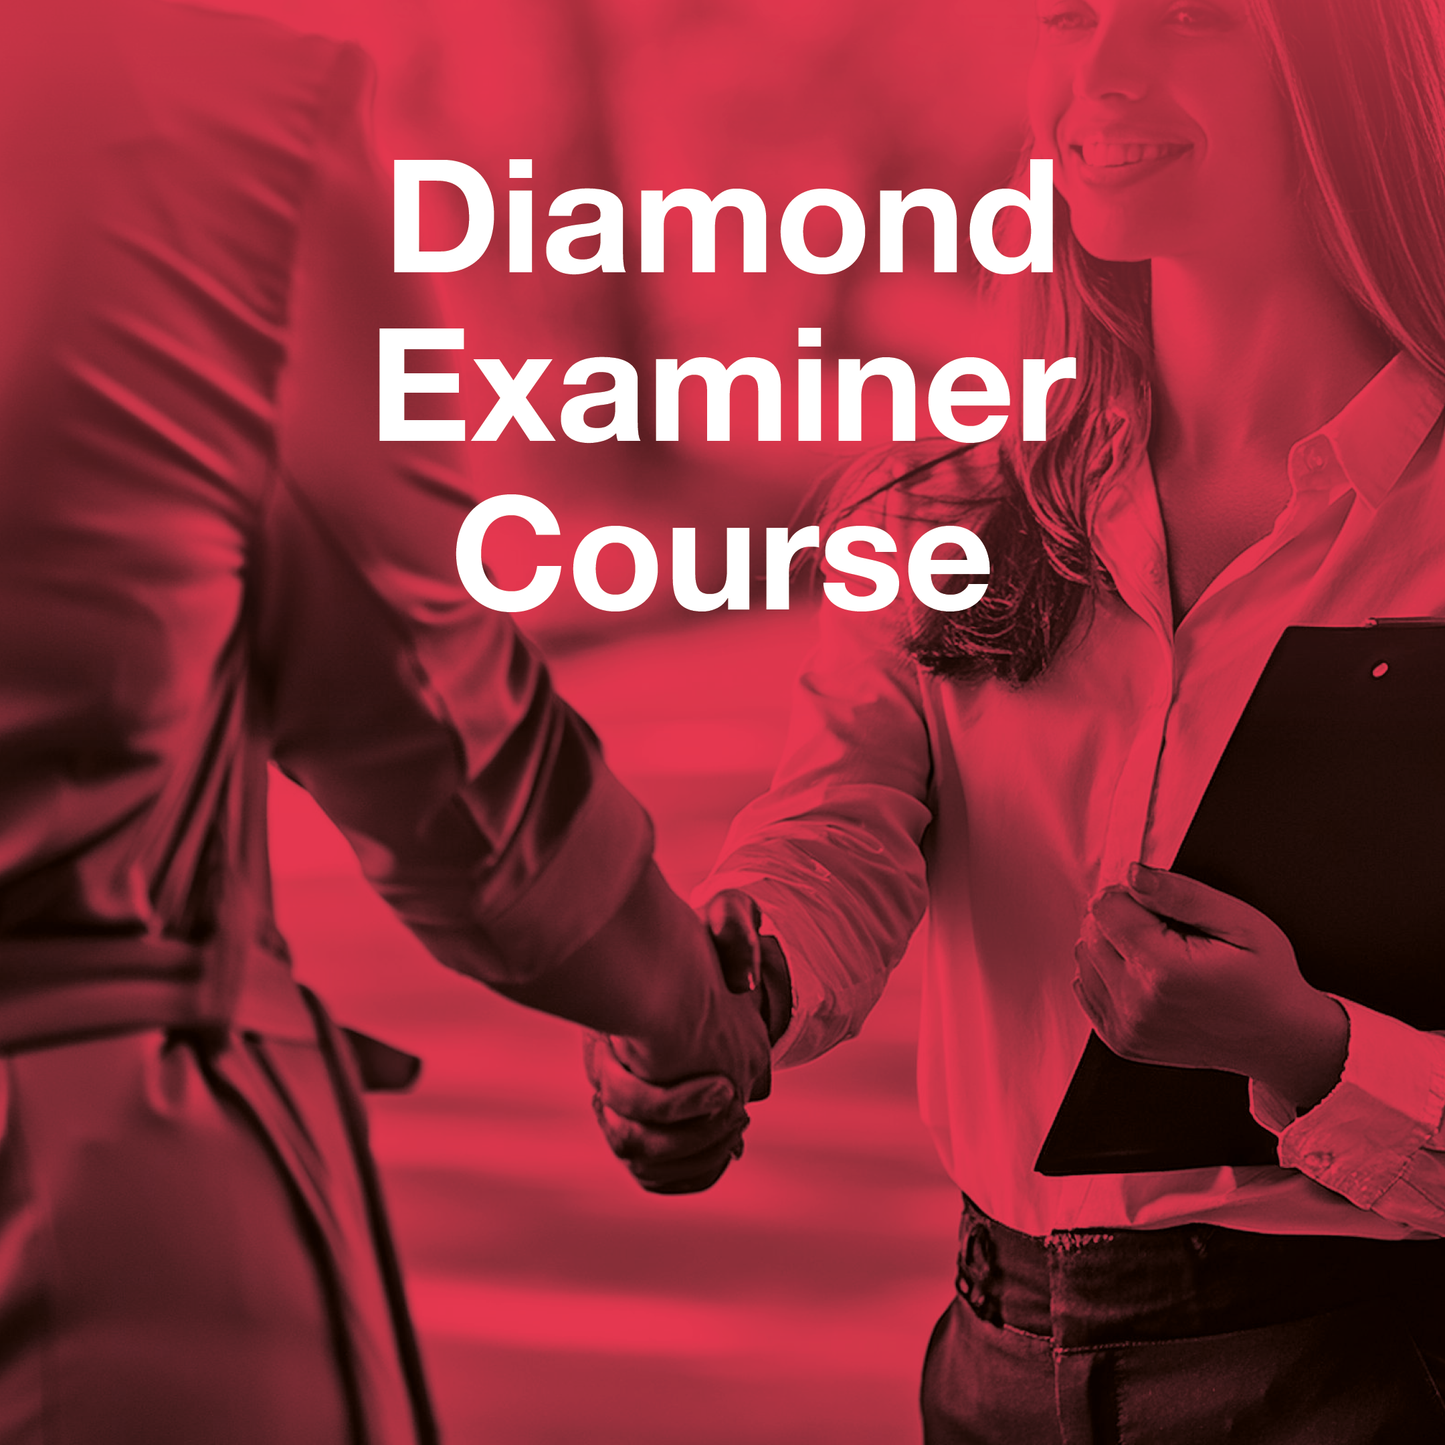 Diamond Examiner Course